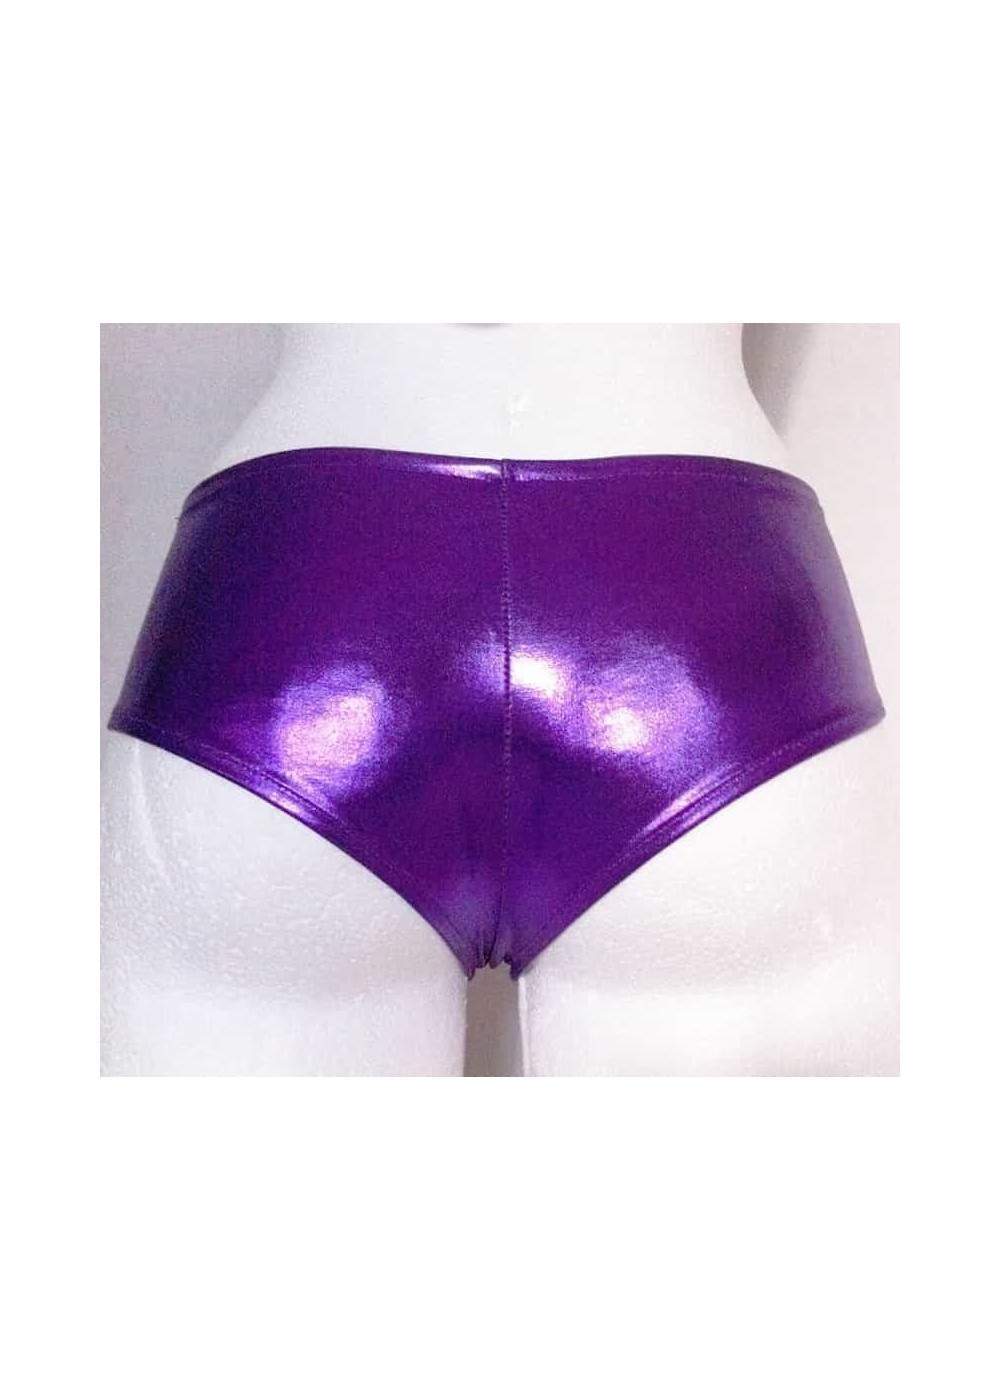 Pantalones cortos de cuero óptico púrpura metalizado Tallas 34 - 42 - 